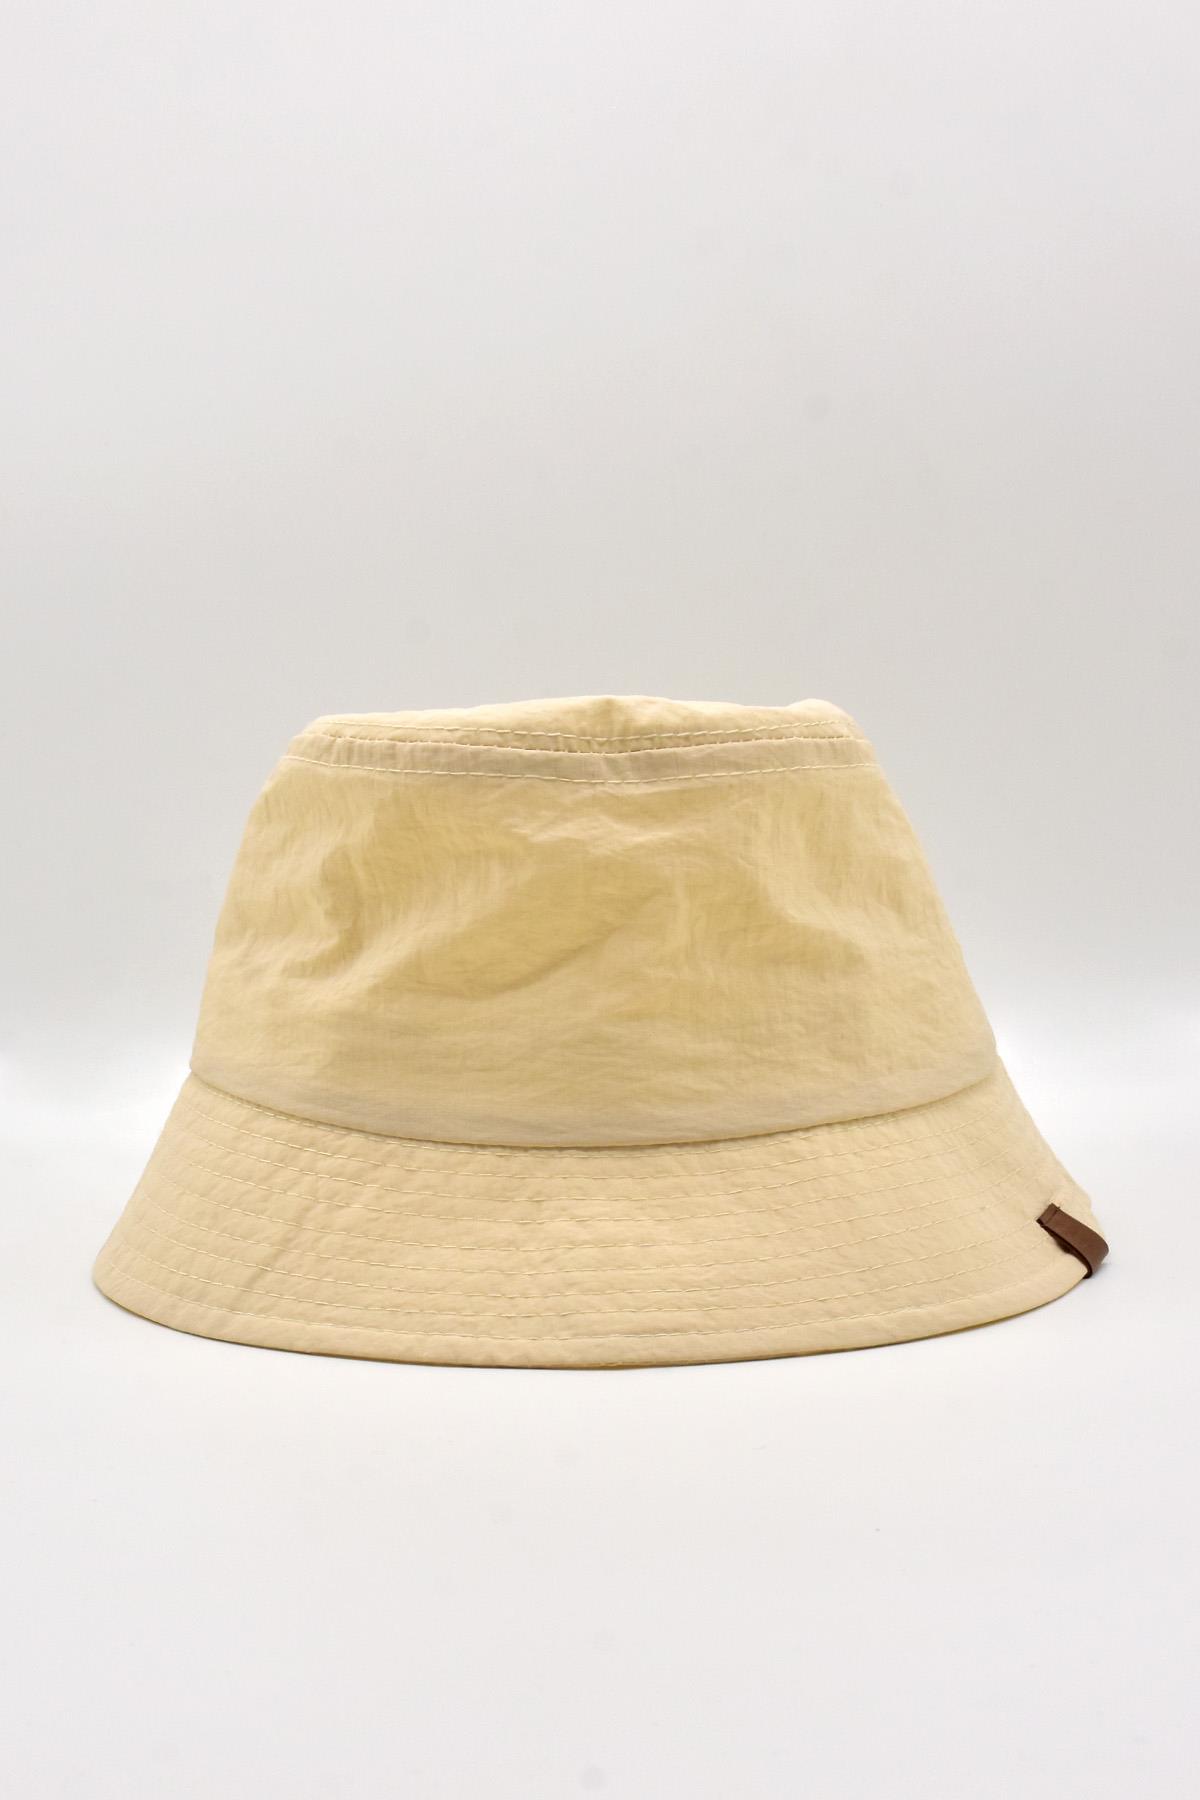 Külah Kadın Bej Bucket Şapka Nefes Alan Hafif Yazlık Balıkçı Şapkası KLH6941